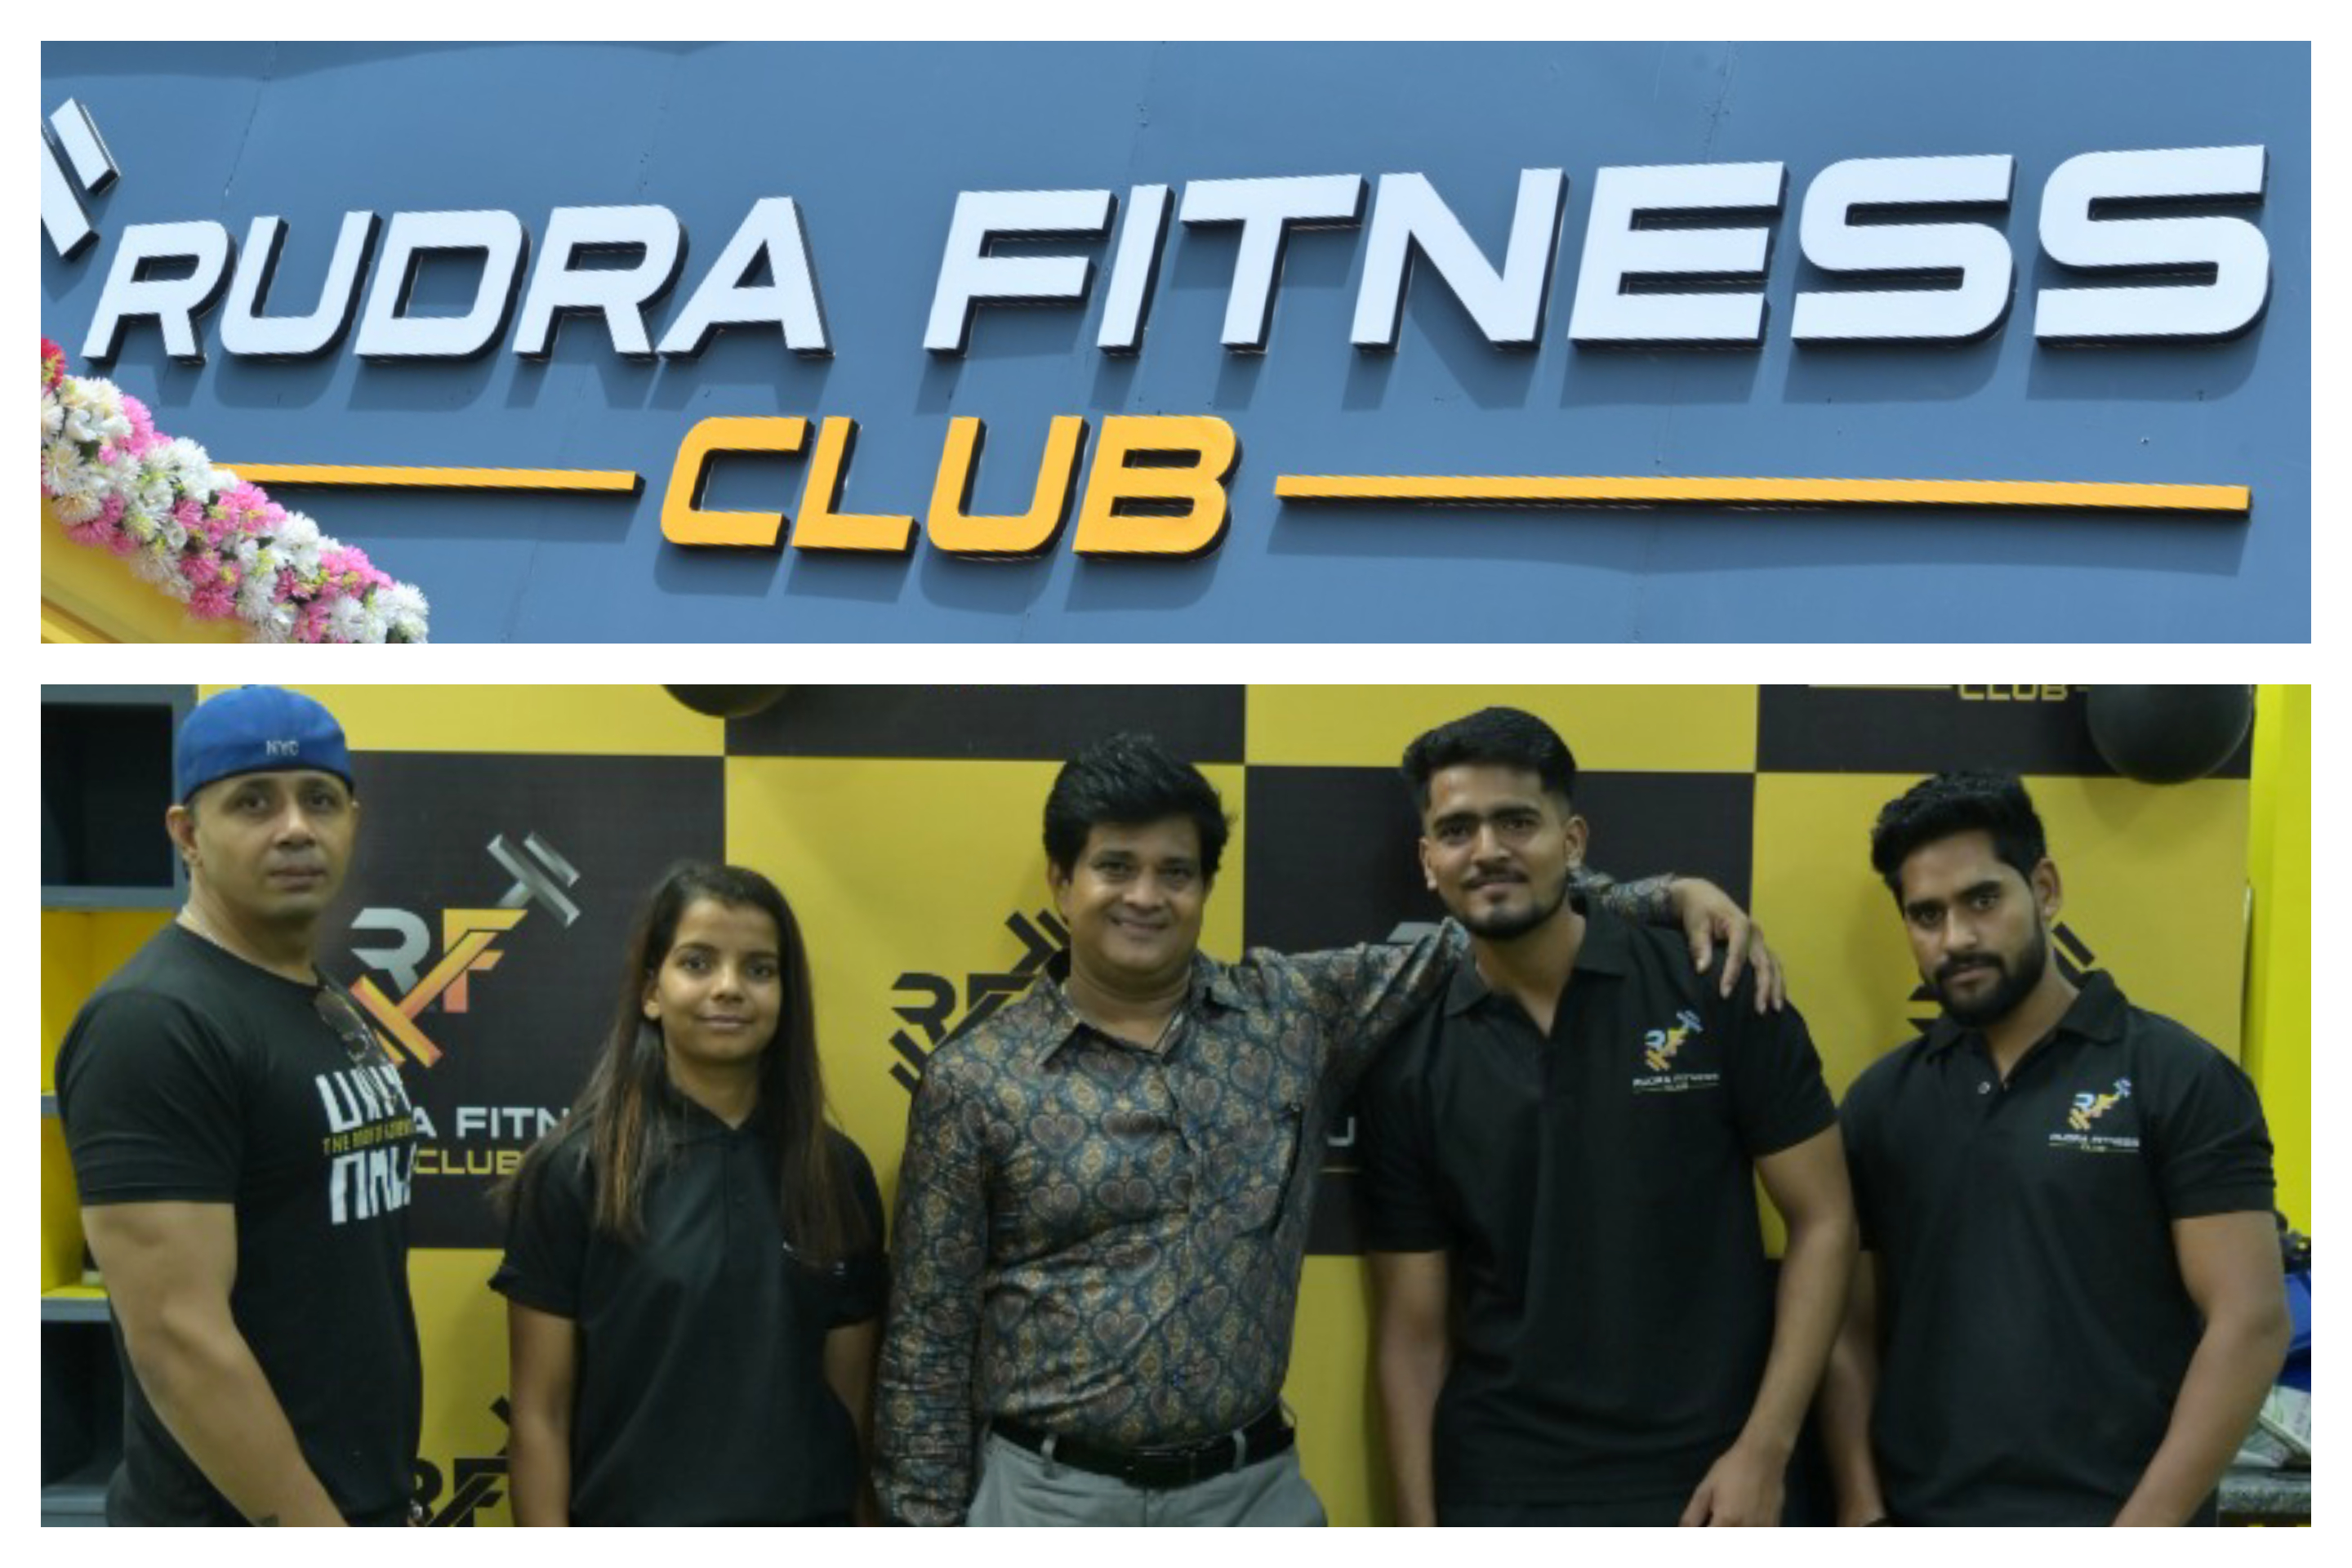 Rudra fitness club